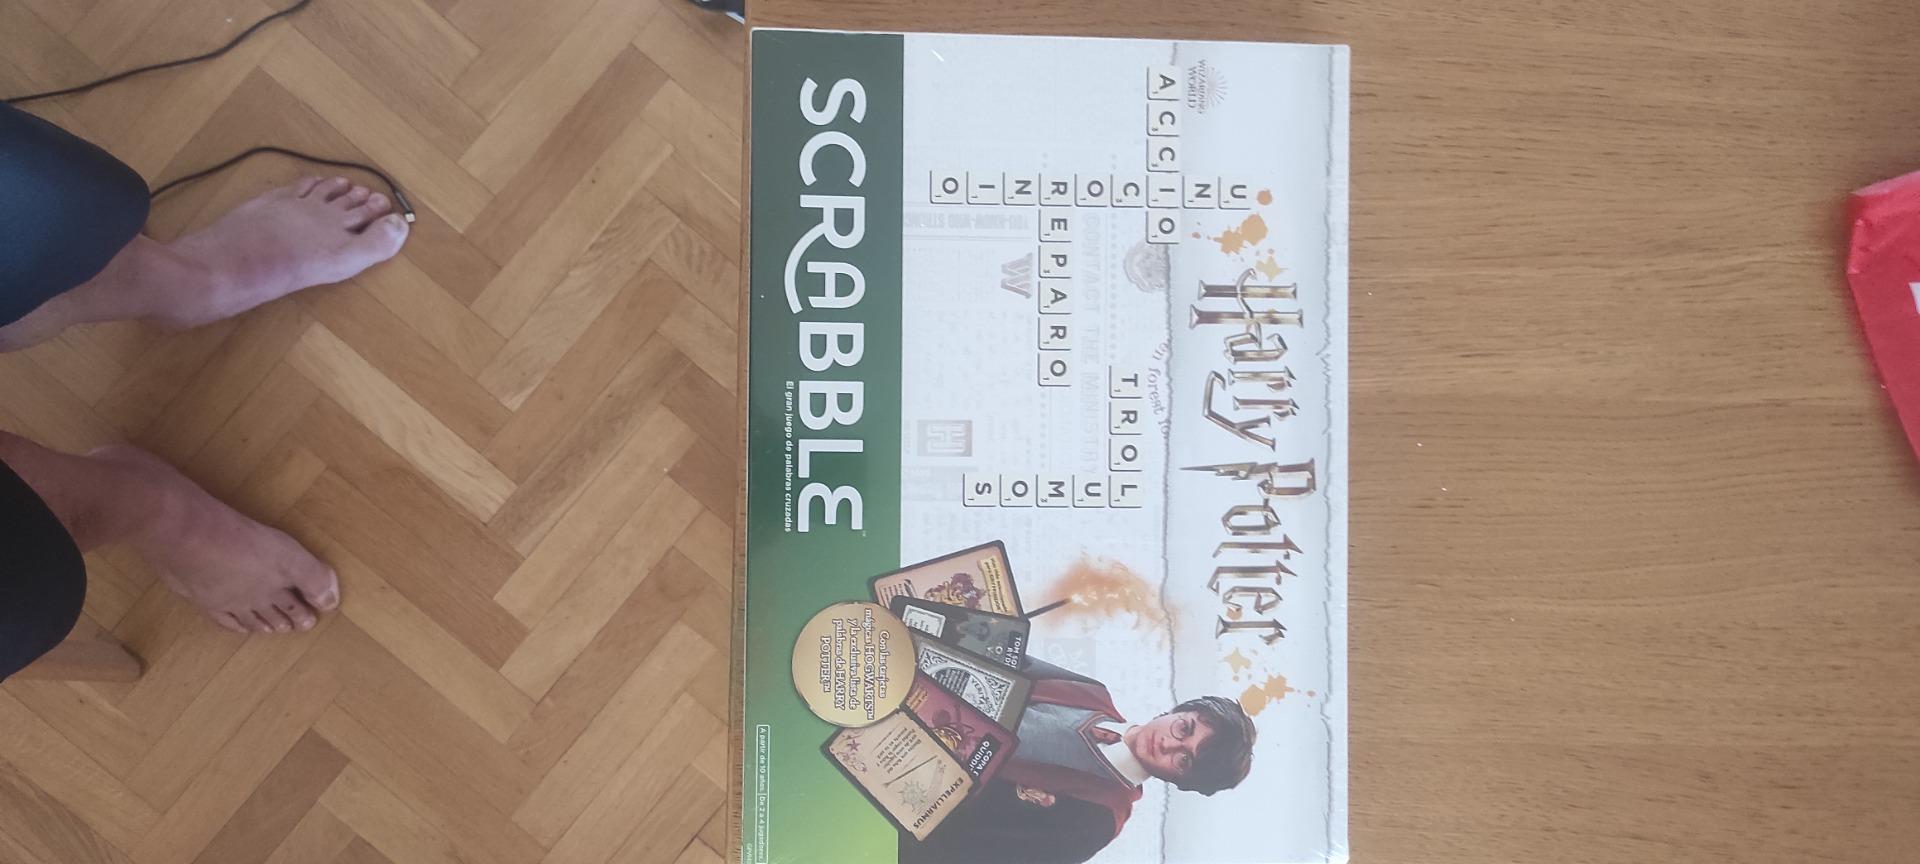 Foto de Juego de mesa Scrabble de Harry Potter Mattel precintado  el plástico intacto.